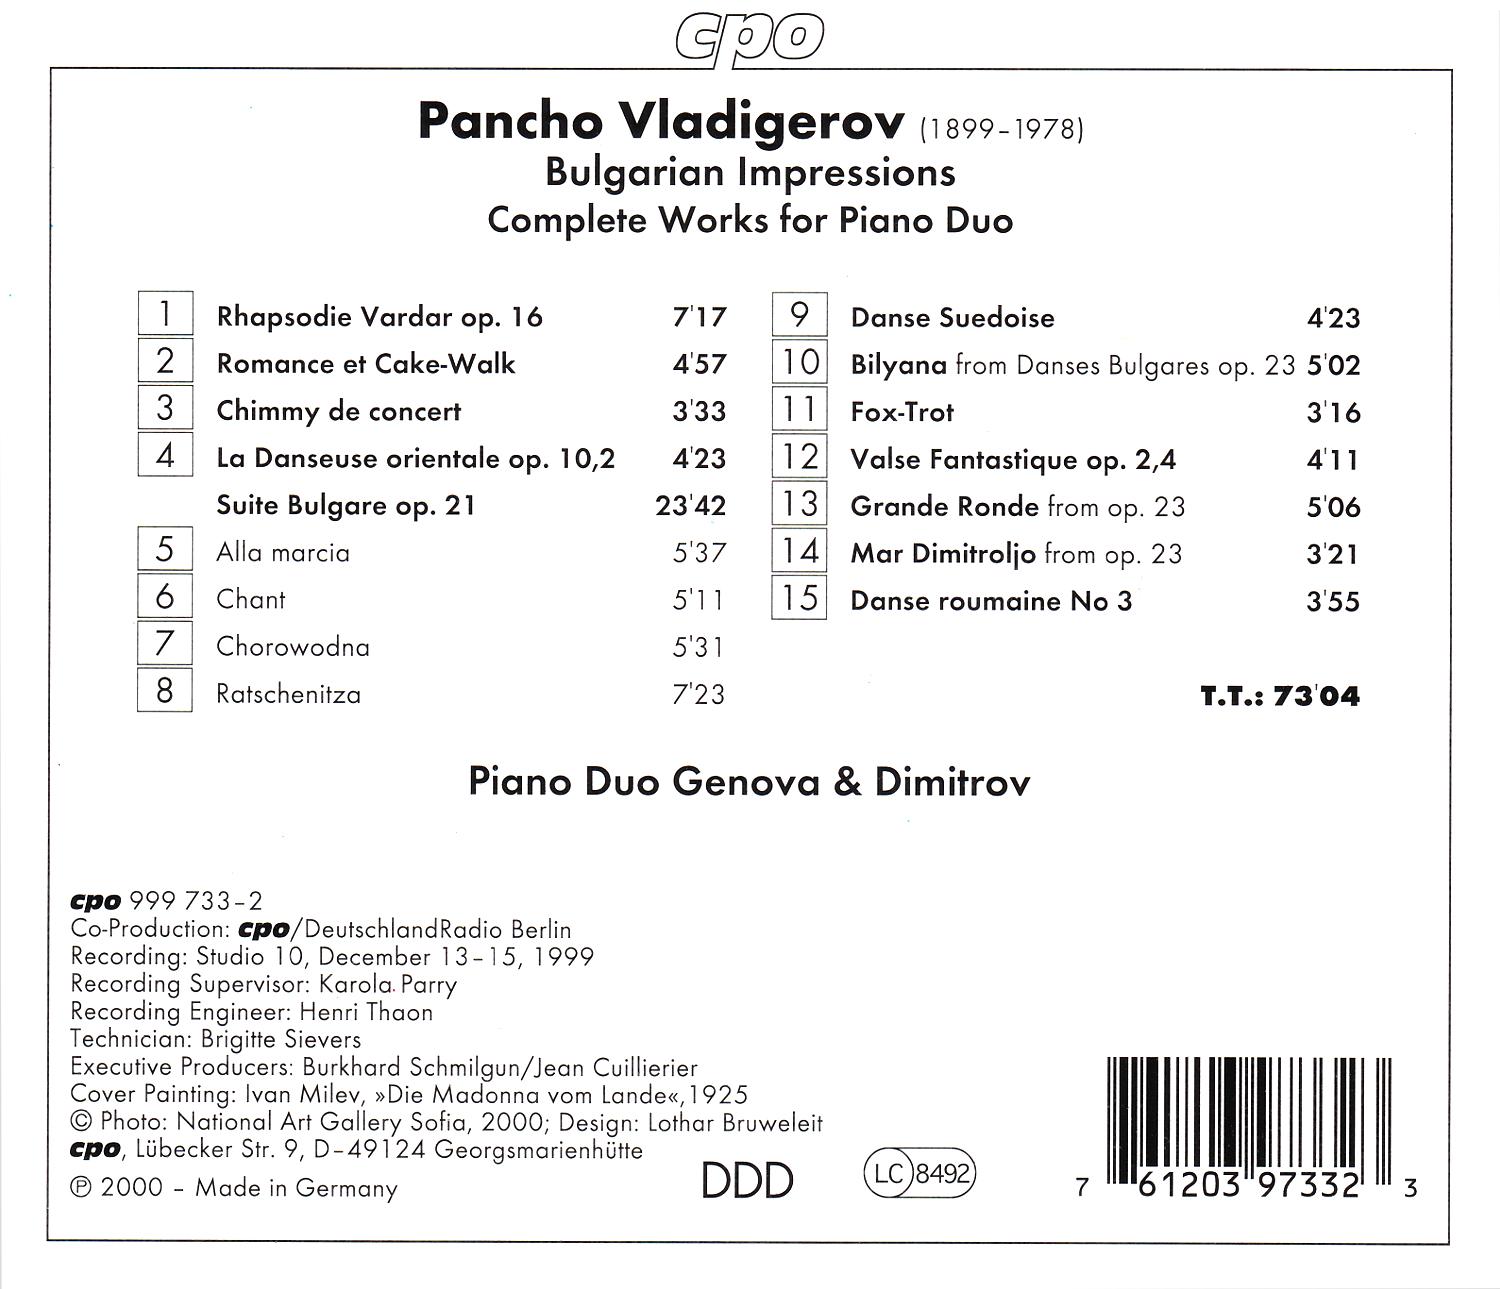 Bulgarische Impressionen • Pancho Vladigerov • Sämtliche Werke für Klavierduo (cpo 999 733-2) |Back Inlay